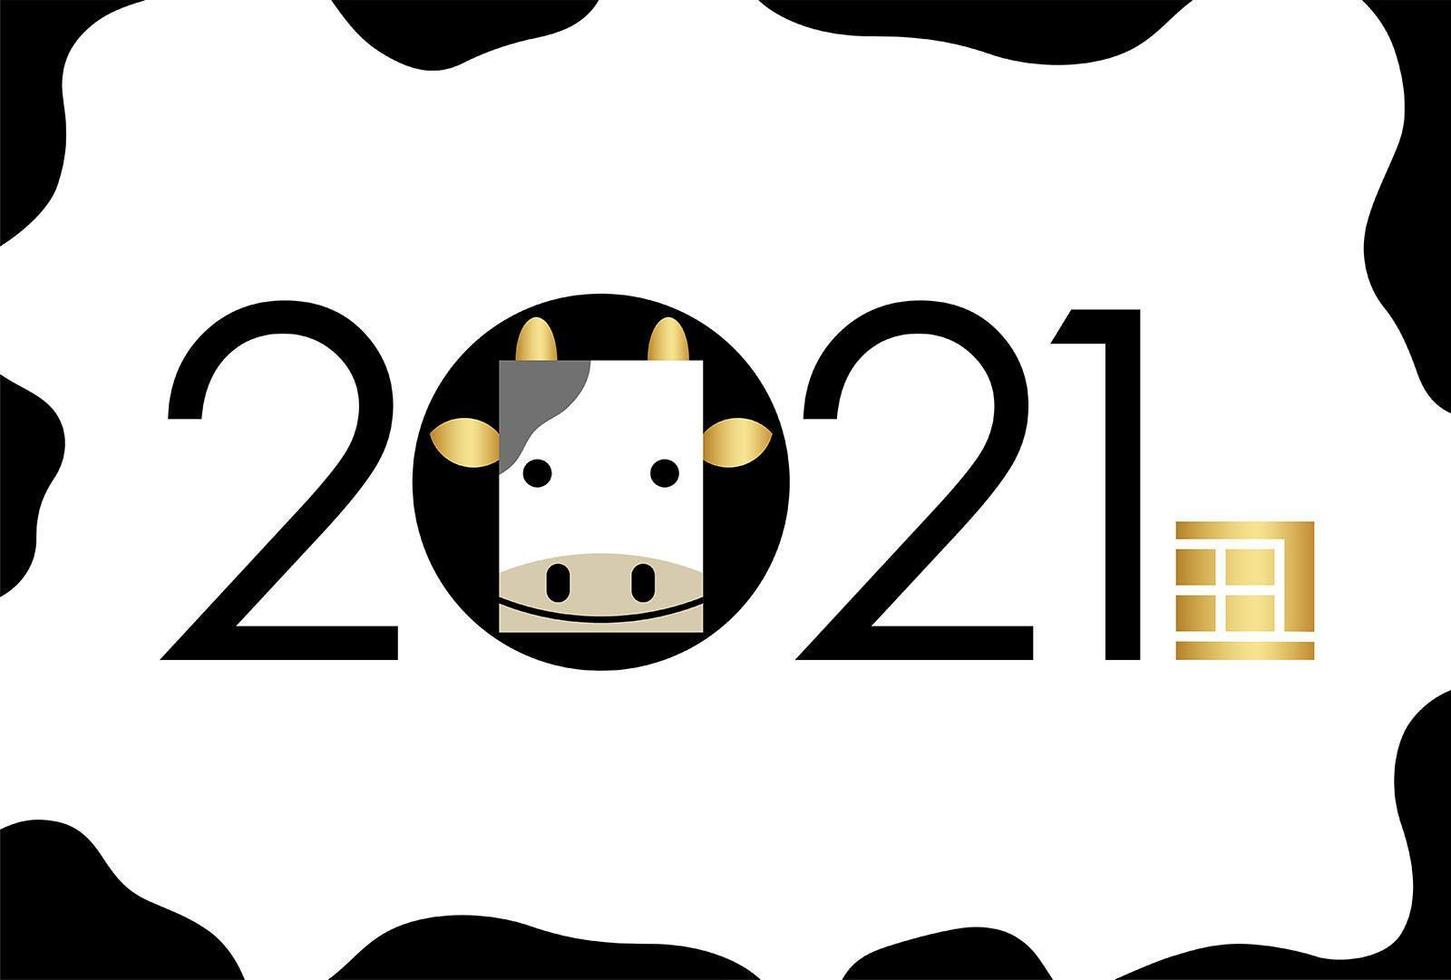 2021 ano do modelo de cartão de ano novo do boi vetor